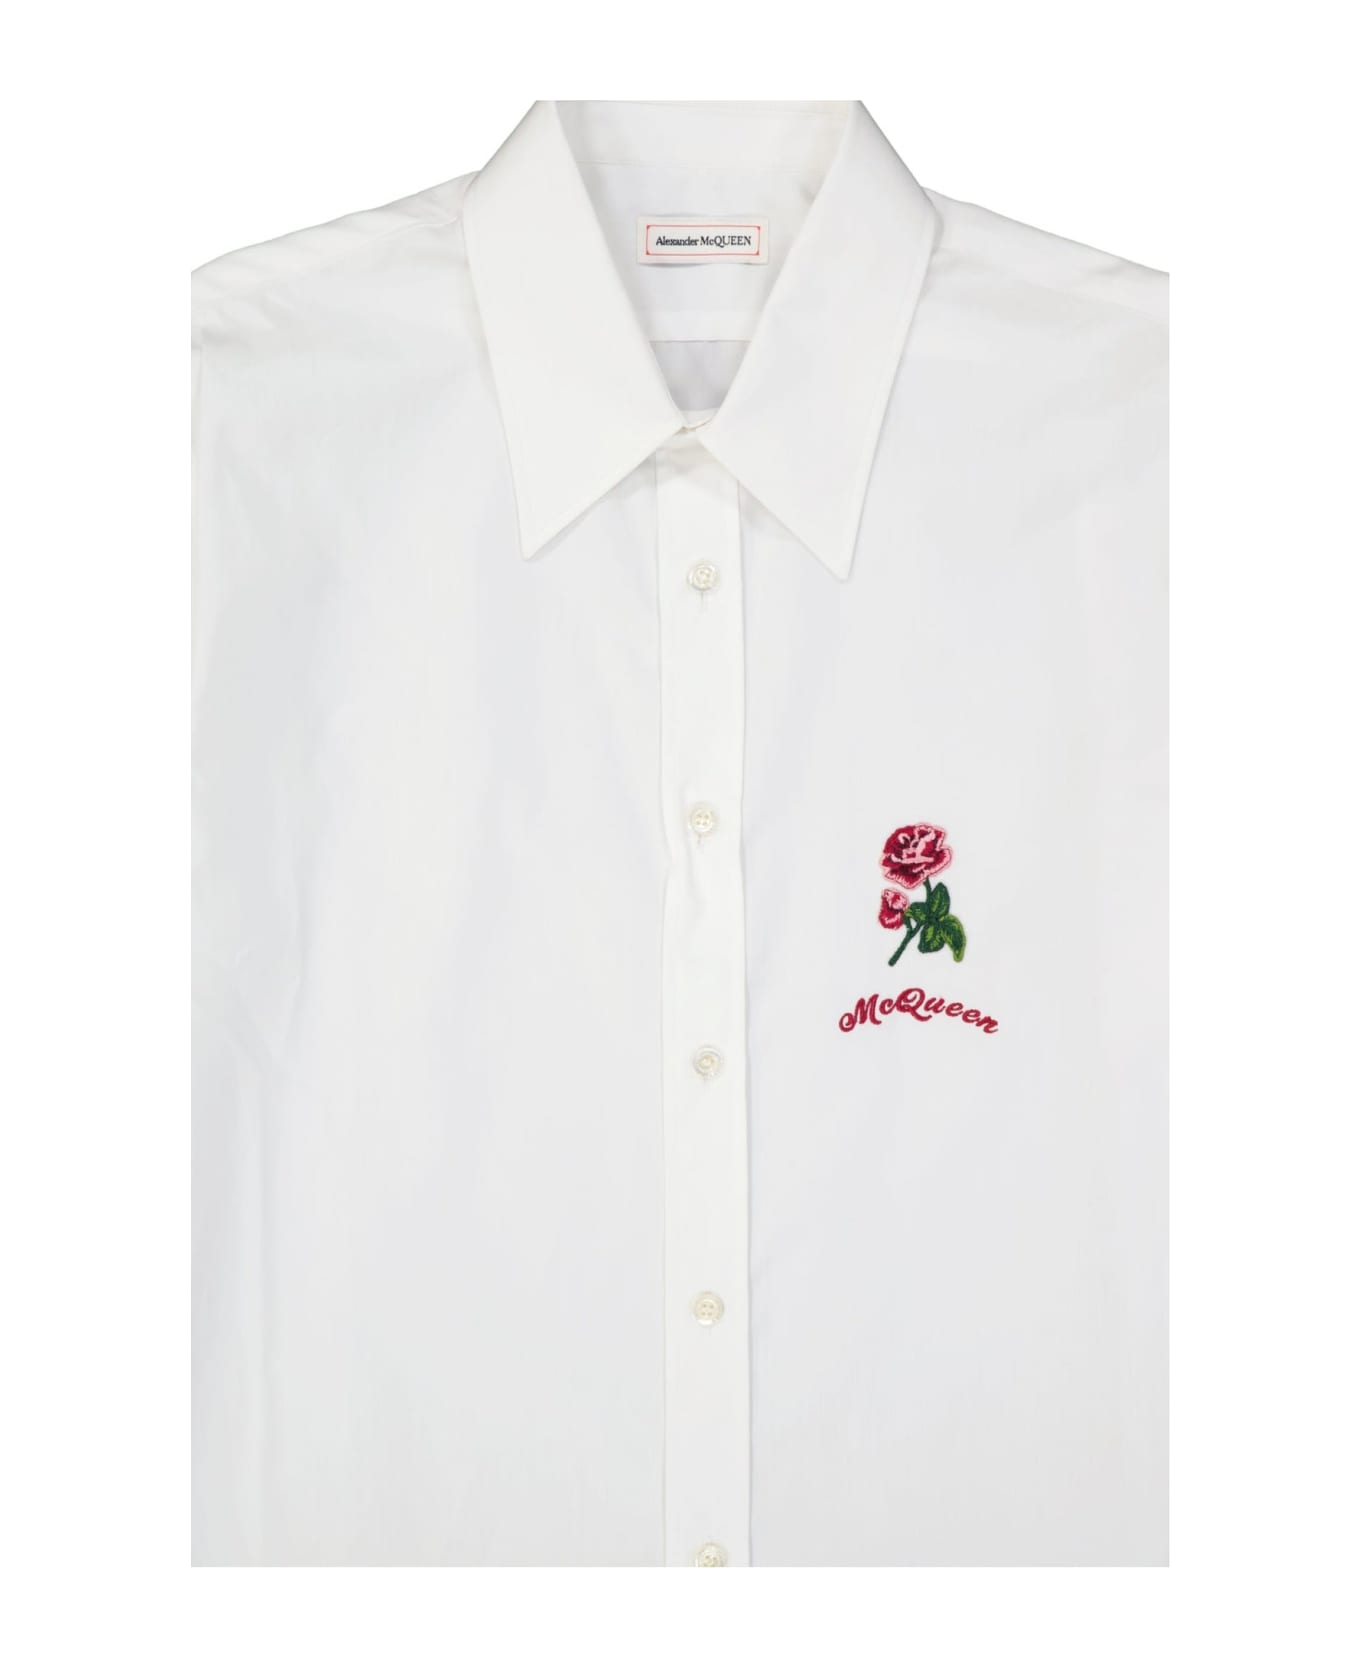 Alexander McQueen Flower Embroidered Cotton Shirt - White